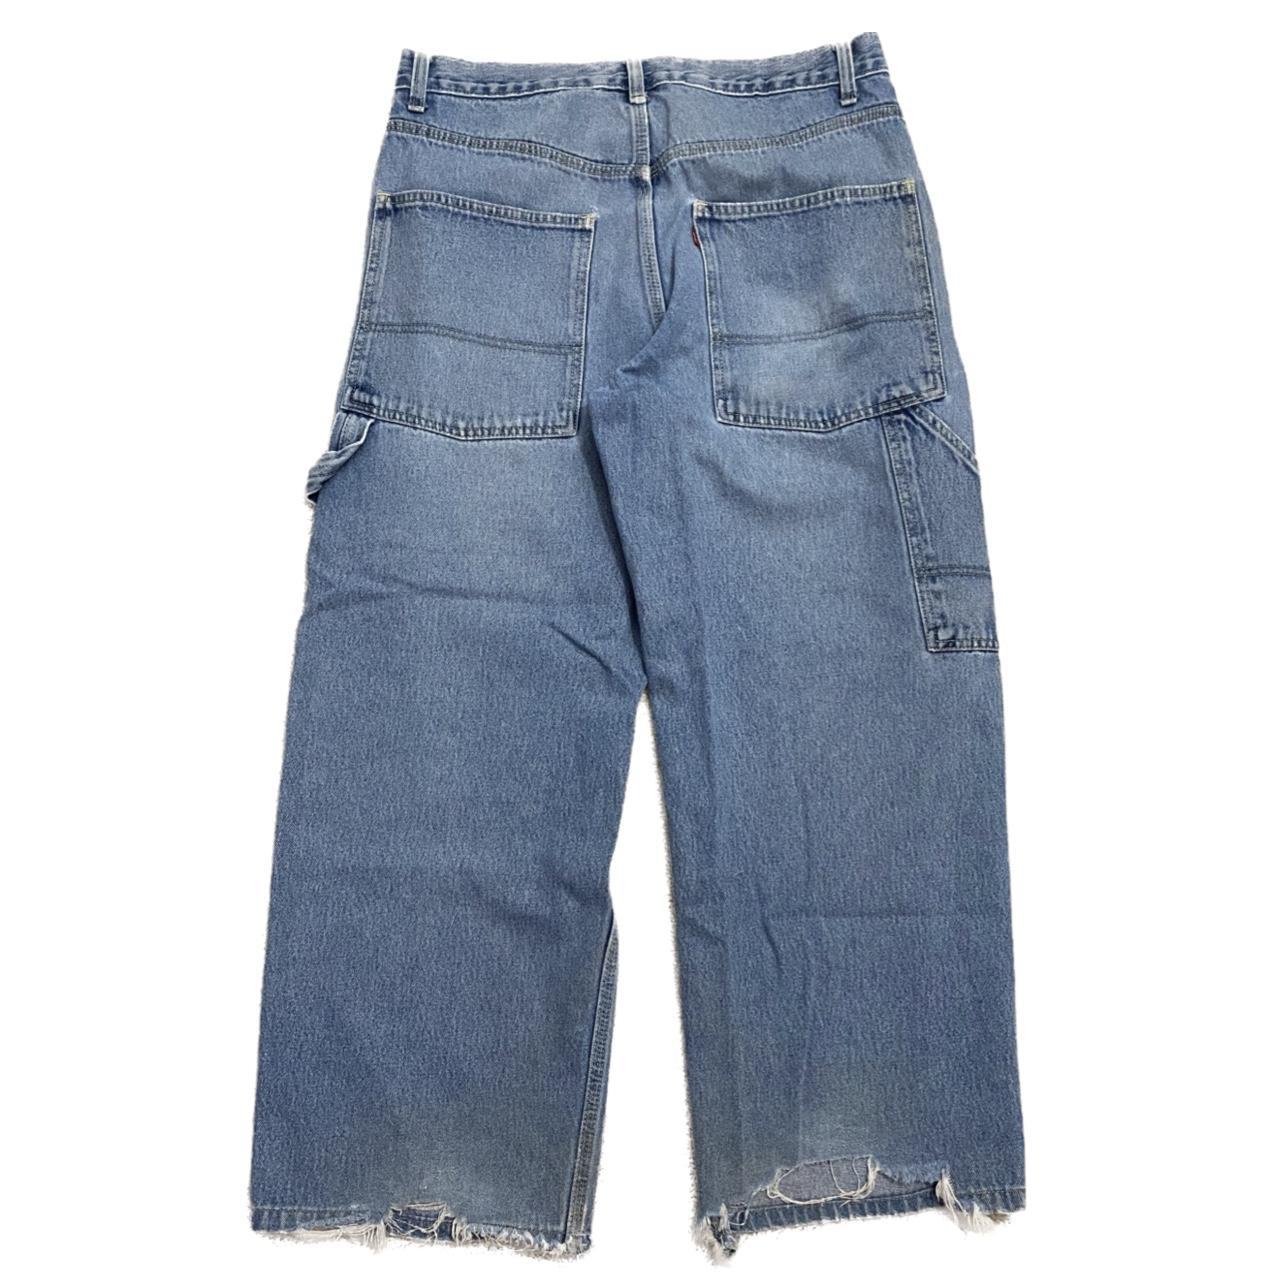 Super baggy vintage Levi’s carpenter jeans Emo... - Depop